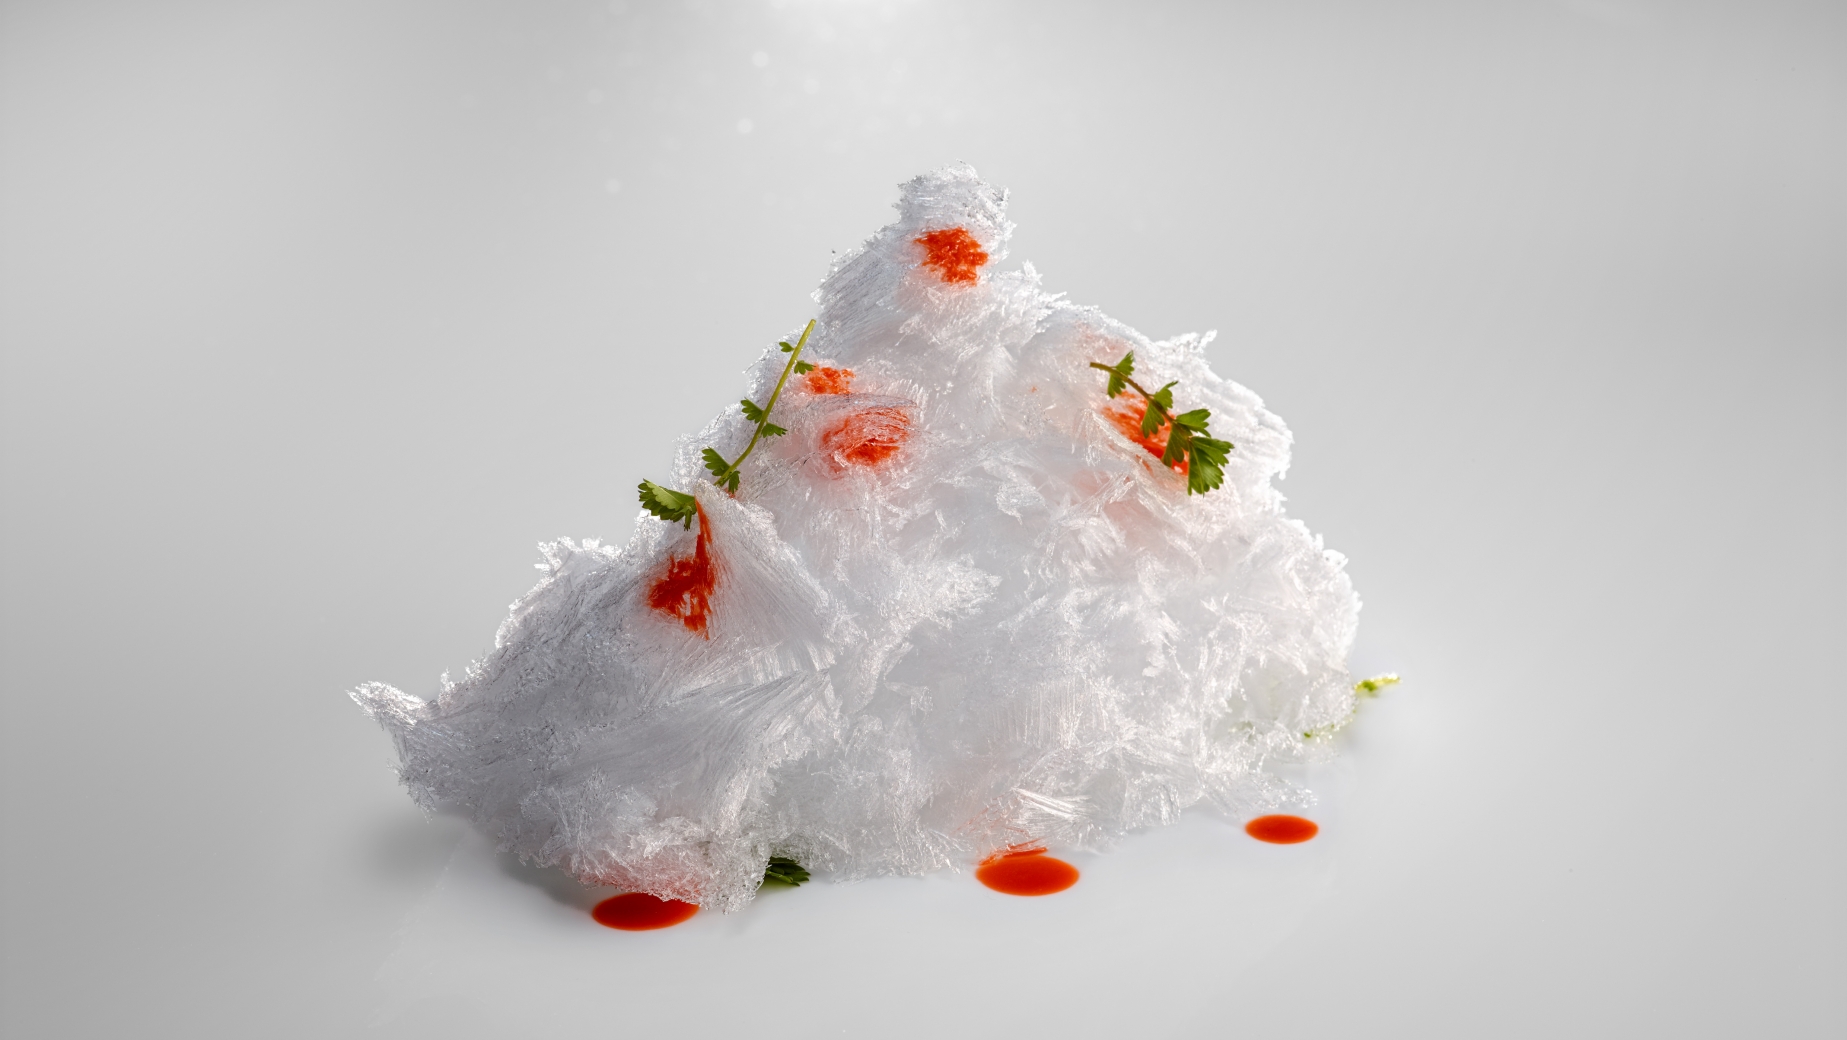 Ice shreds. Scarlet shrimp perfume.
PHOTO: José Luis López de Zubiría / Mugaritz